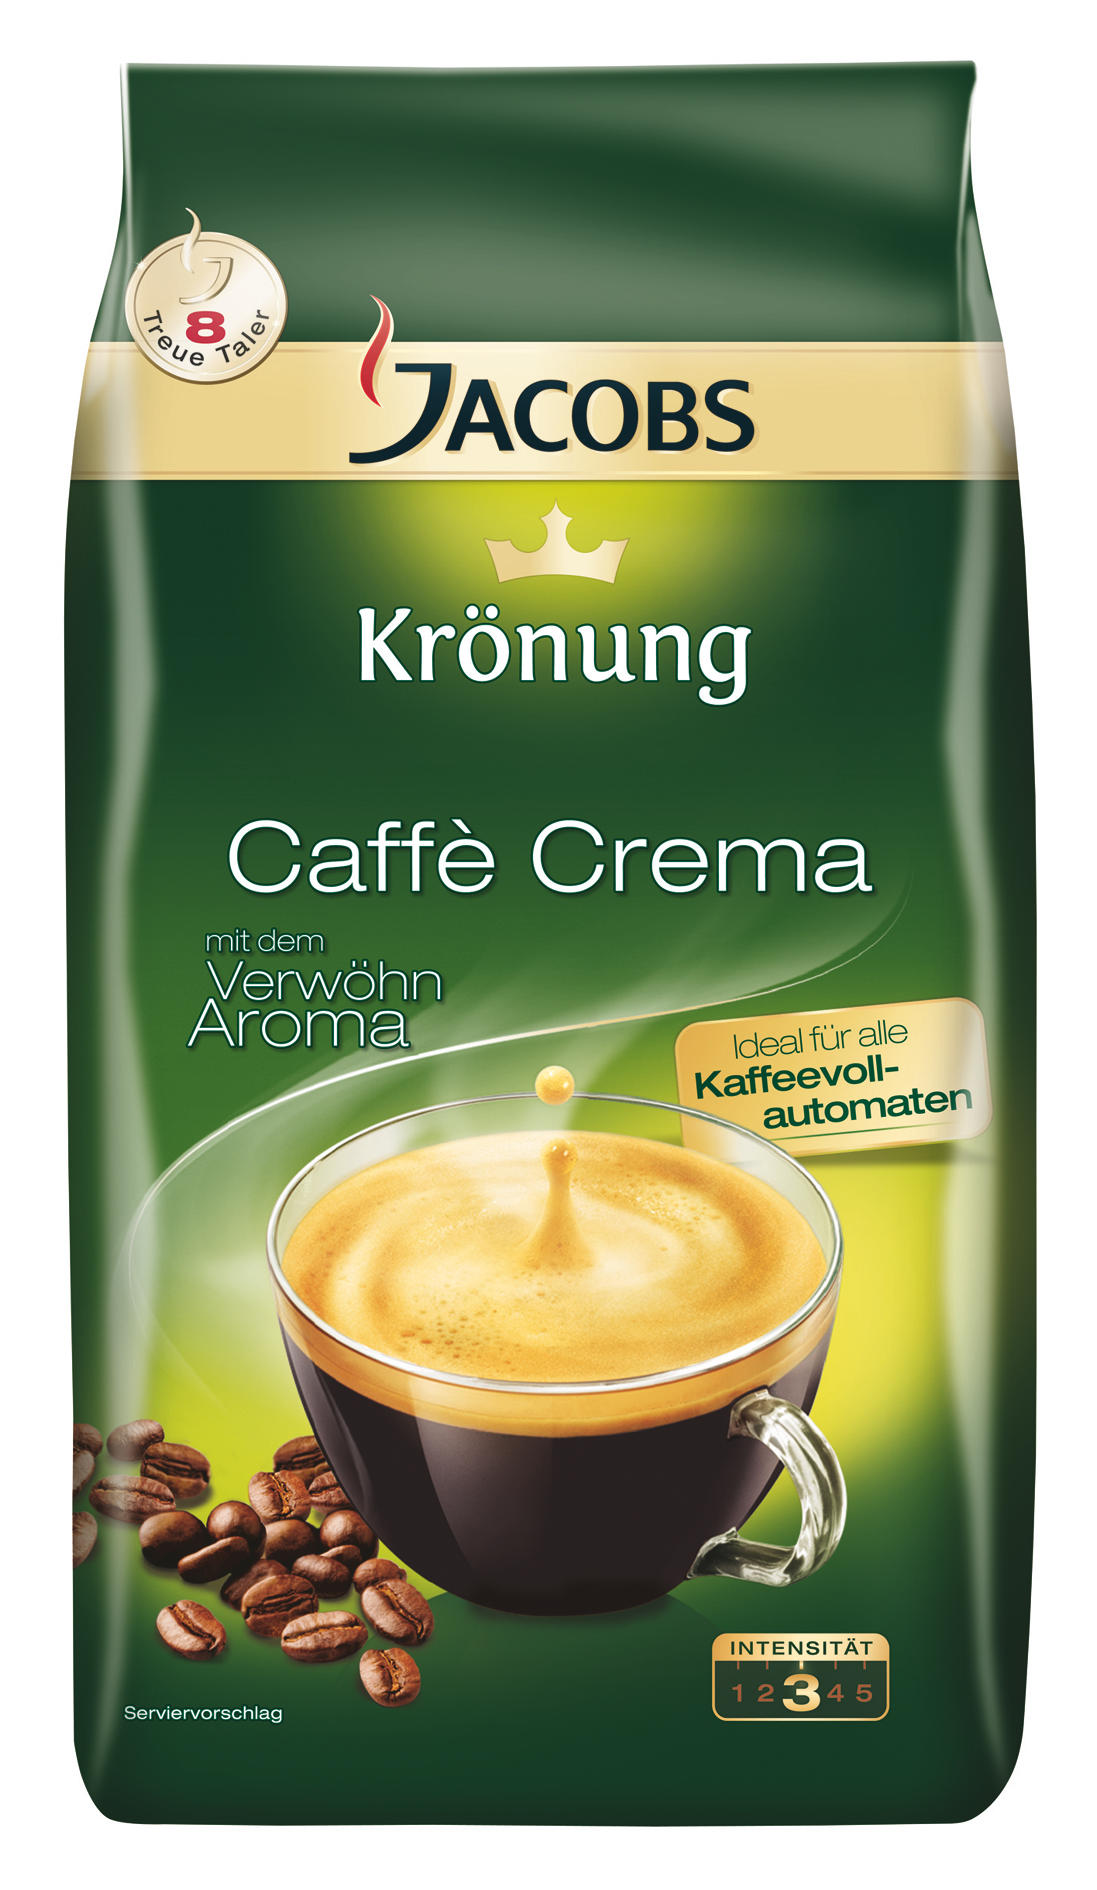 JACOBS Krönung Caffe Kaffeebohnen Crema klassisch